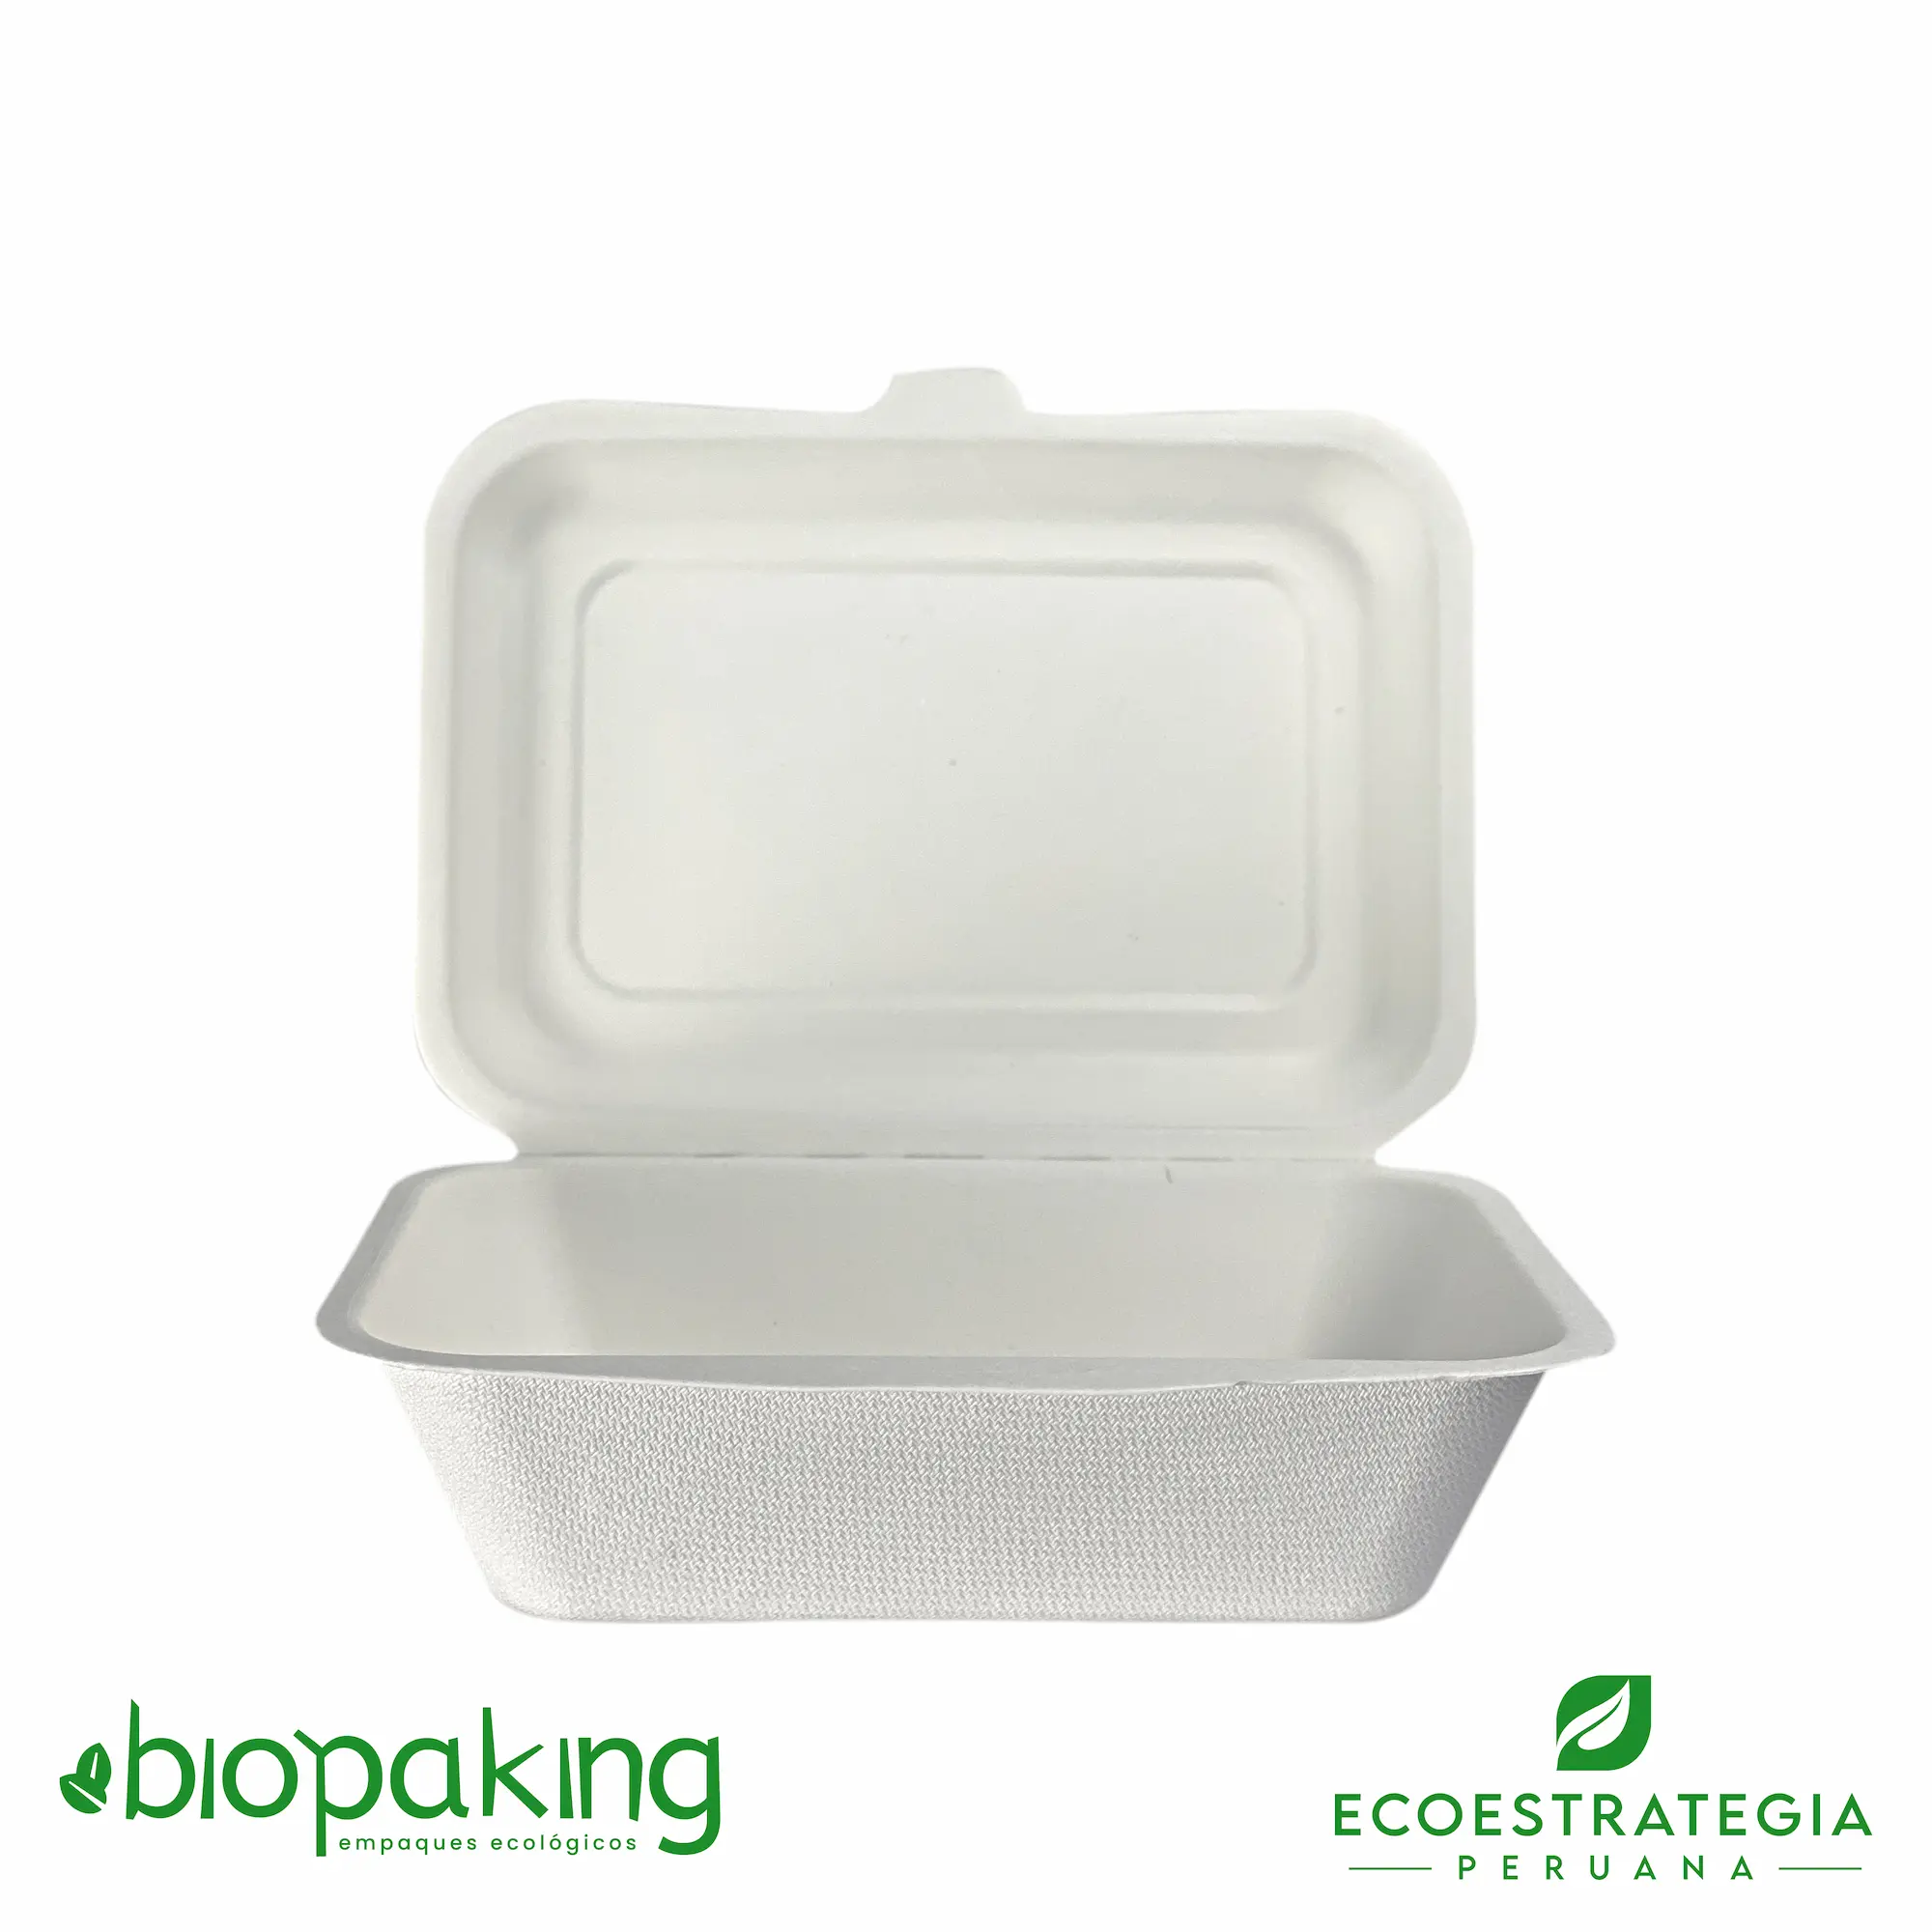 El envase biodegradable CT7 o EP001 es también conocido como envases biodegradables para ensaladas 7x5, envases ecológicos para ensaladas 7x5, envases descartables para ensaladas 5x7, envases ep001 5x7, Ct7 biodegradable, Contenedor fibra de caña 18.5x13x6 600ml, Contenedor biodegradable 7x5x2.5”, Contenedor chato rectangular 600 ml, Bcs75, Fbox5x7, 0101140, b001, tp-005, Clamshell biodegradable 7x5, Envase 5x7” pulpa de caña de azúcar, Contenedor eco 600 ml, Contenedor eco 450 17x12cm Fibra de caña, Contenedor menú mediano, Contenedor para postre, importadores de envases biodegradable 5x7, distribuidores b001 biodegradable, mayoristas 5x7 biodegradable